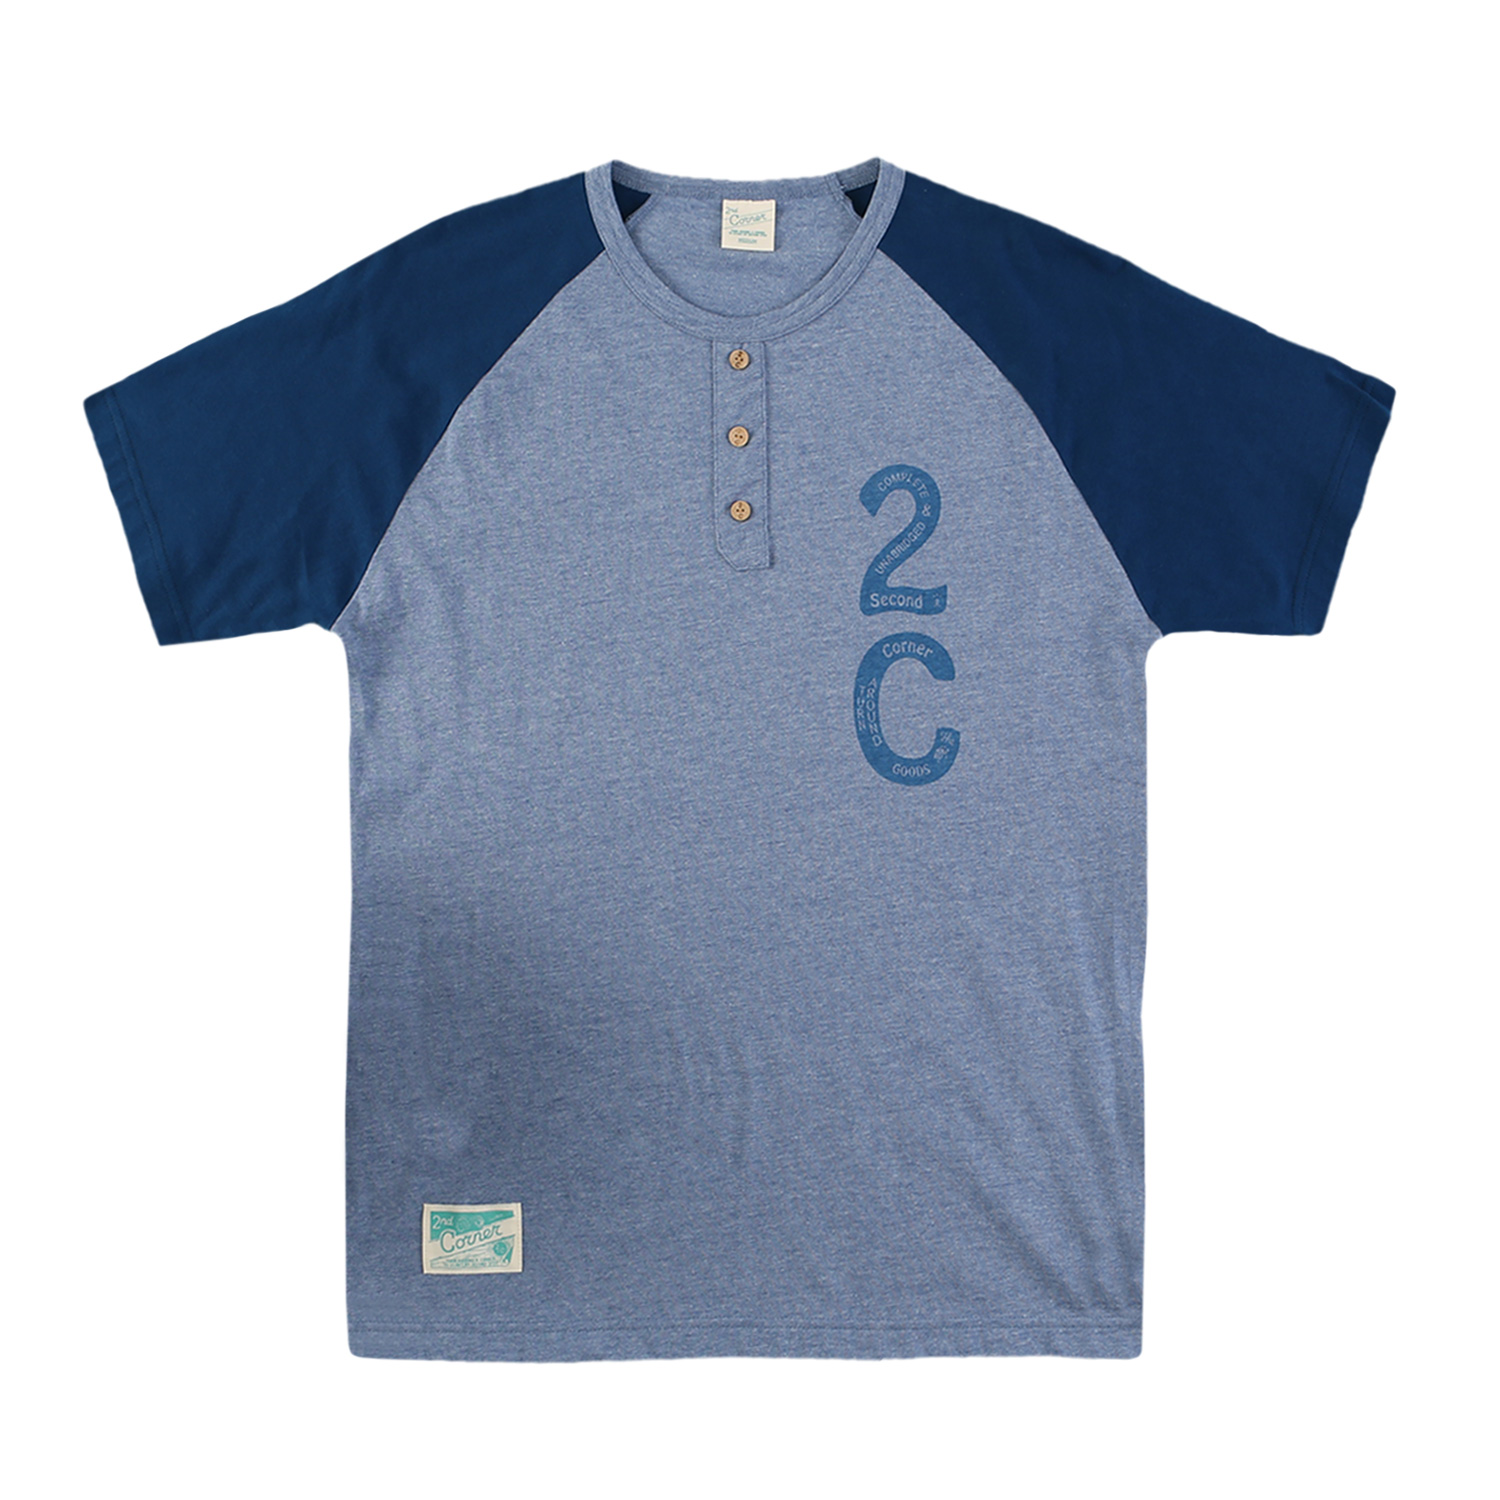 세컨드코너 2C 남성 반팔 티셔츠 / 그래픽 티셔츠 / 라운드넥 반팔티 Cardiff - Navy